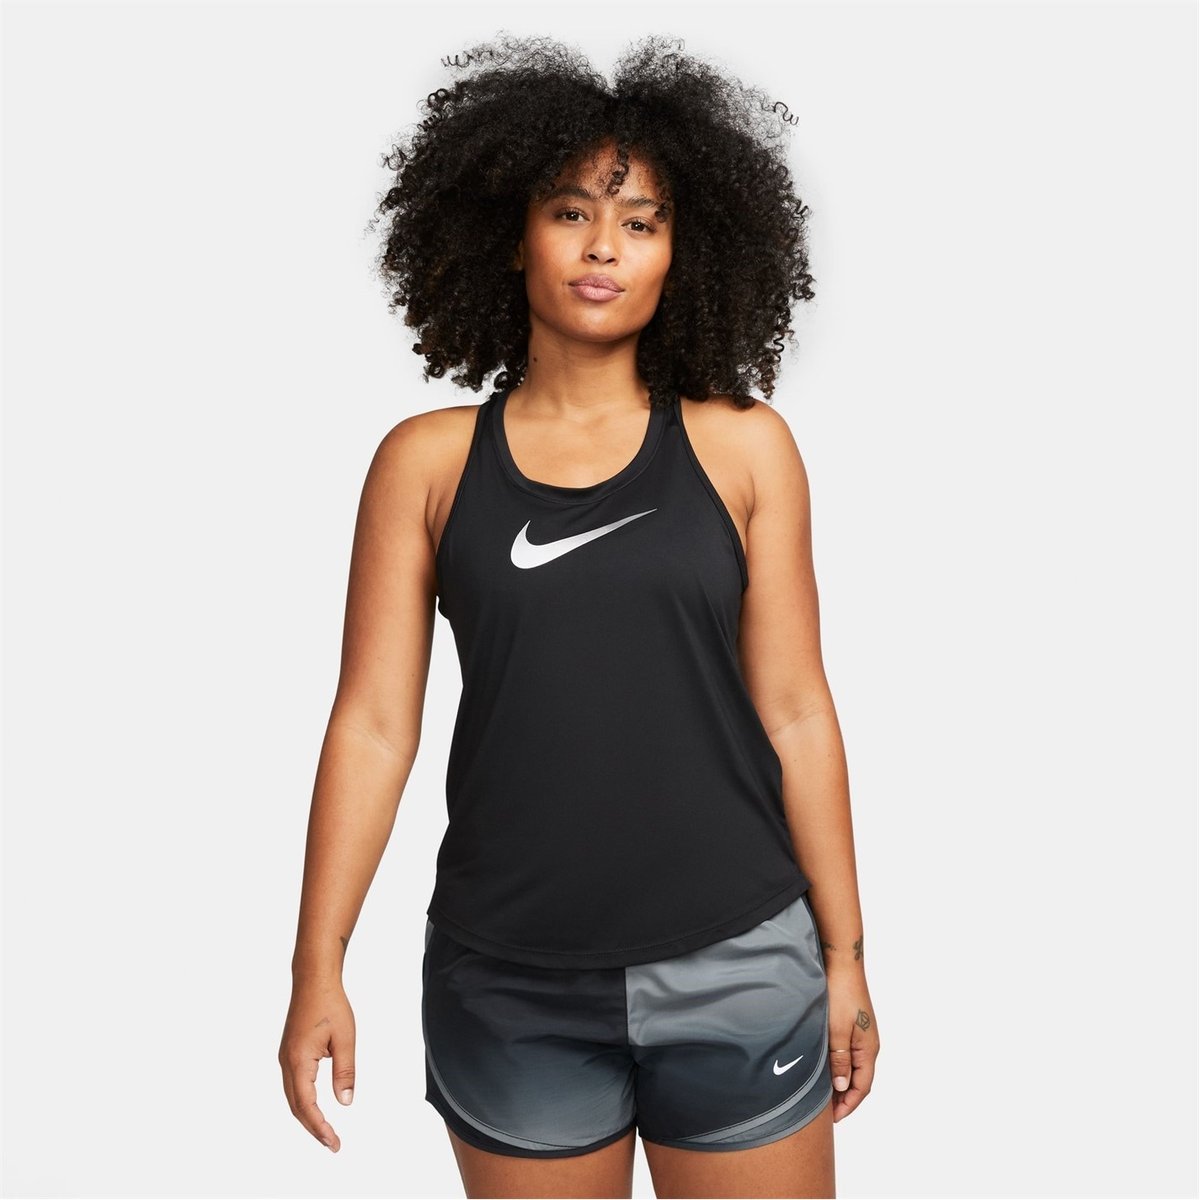 Nike One Dri Fit Tank Top Womens